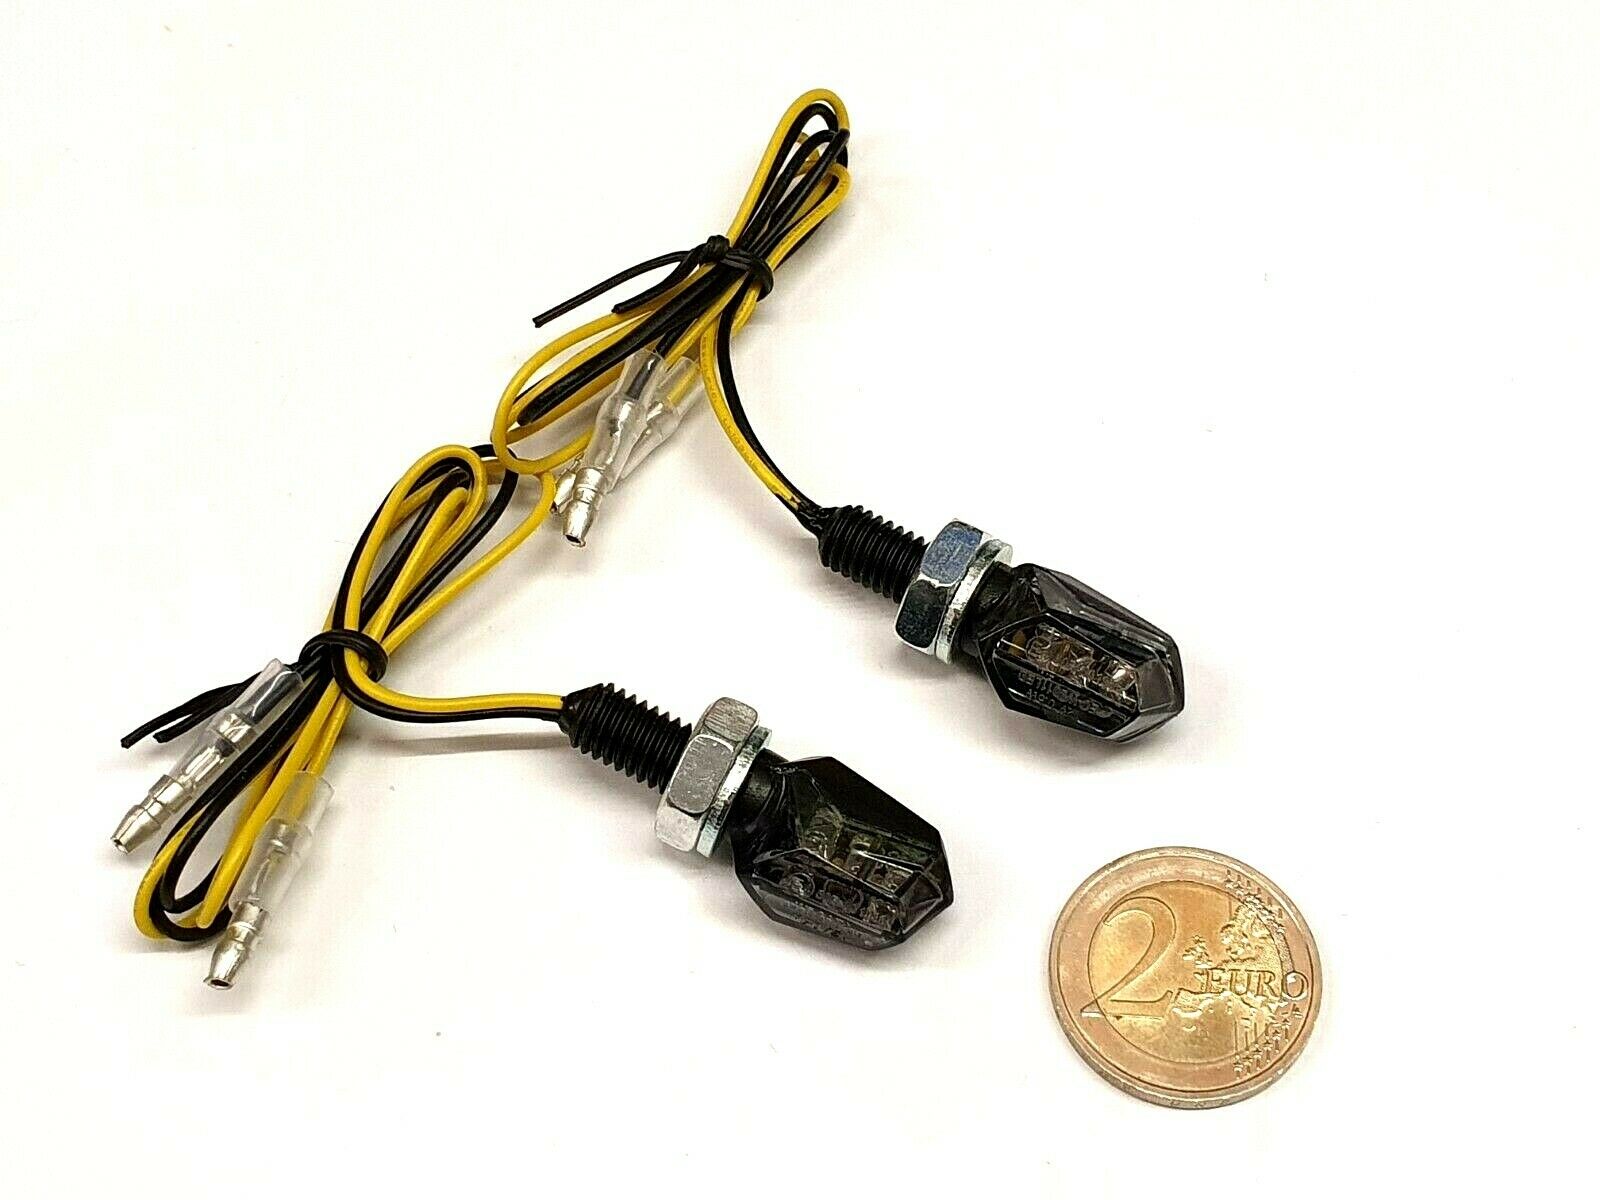 JS-Parts MINI LED Blinker TINY, Glas getönt, E-geprüft